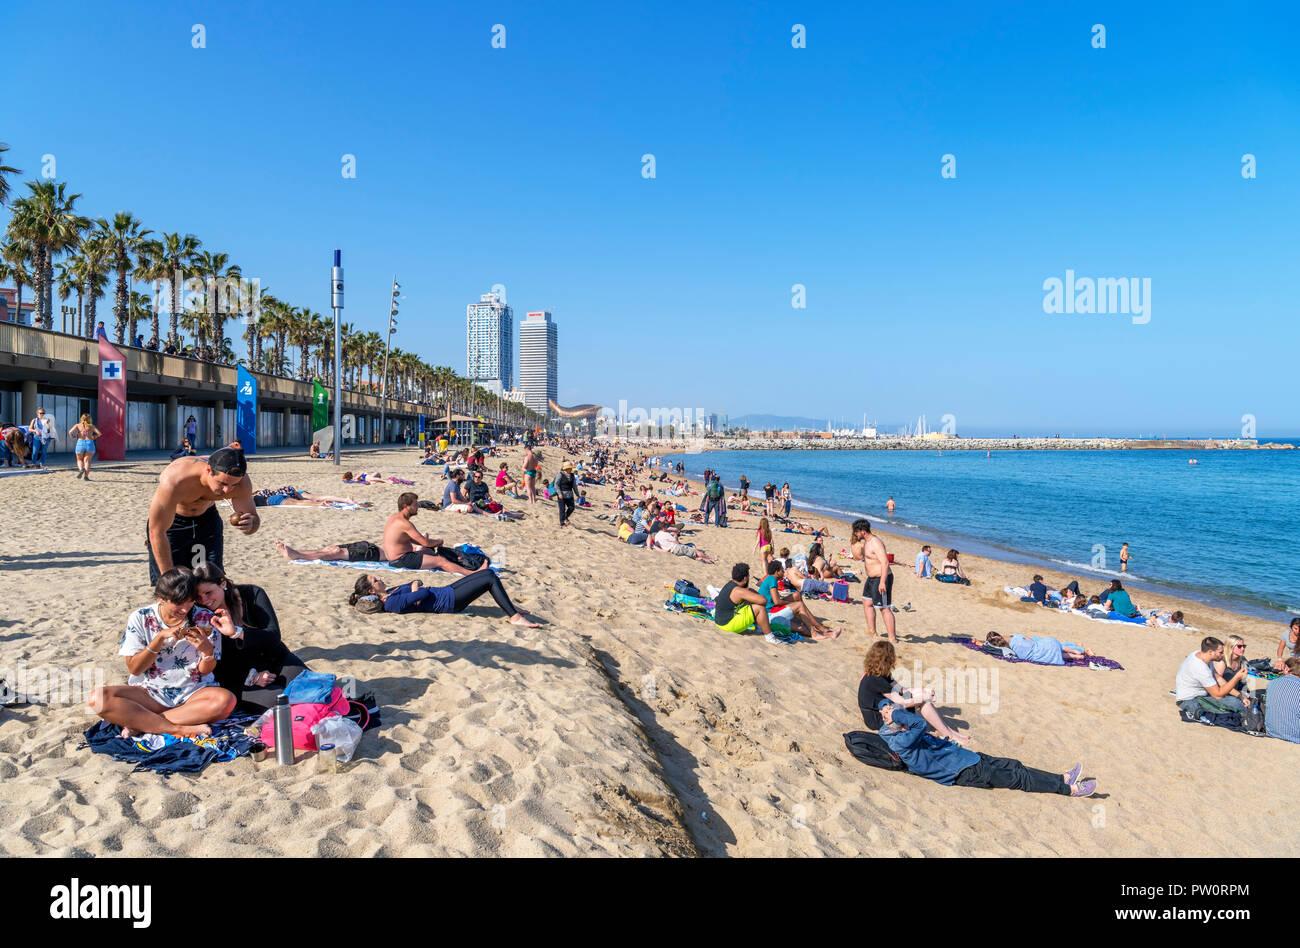 La plage de Barcelone. La plage de La Barceloneta (Platja de la Barceloneta), Barcelone, Espagne Banque D'Images